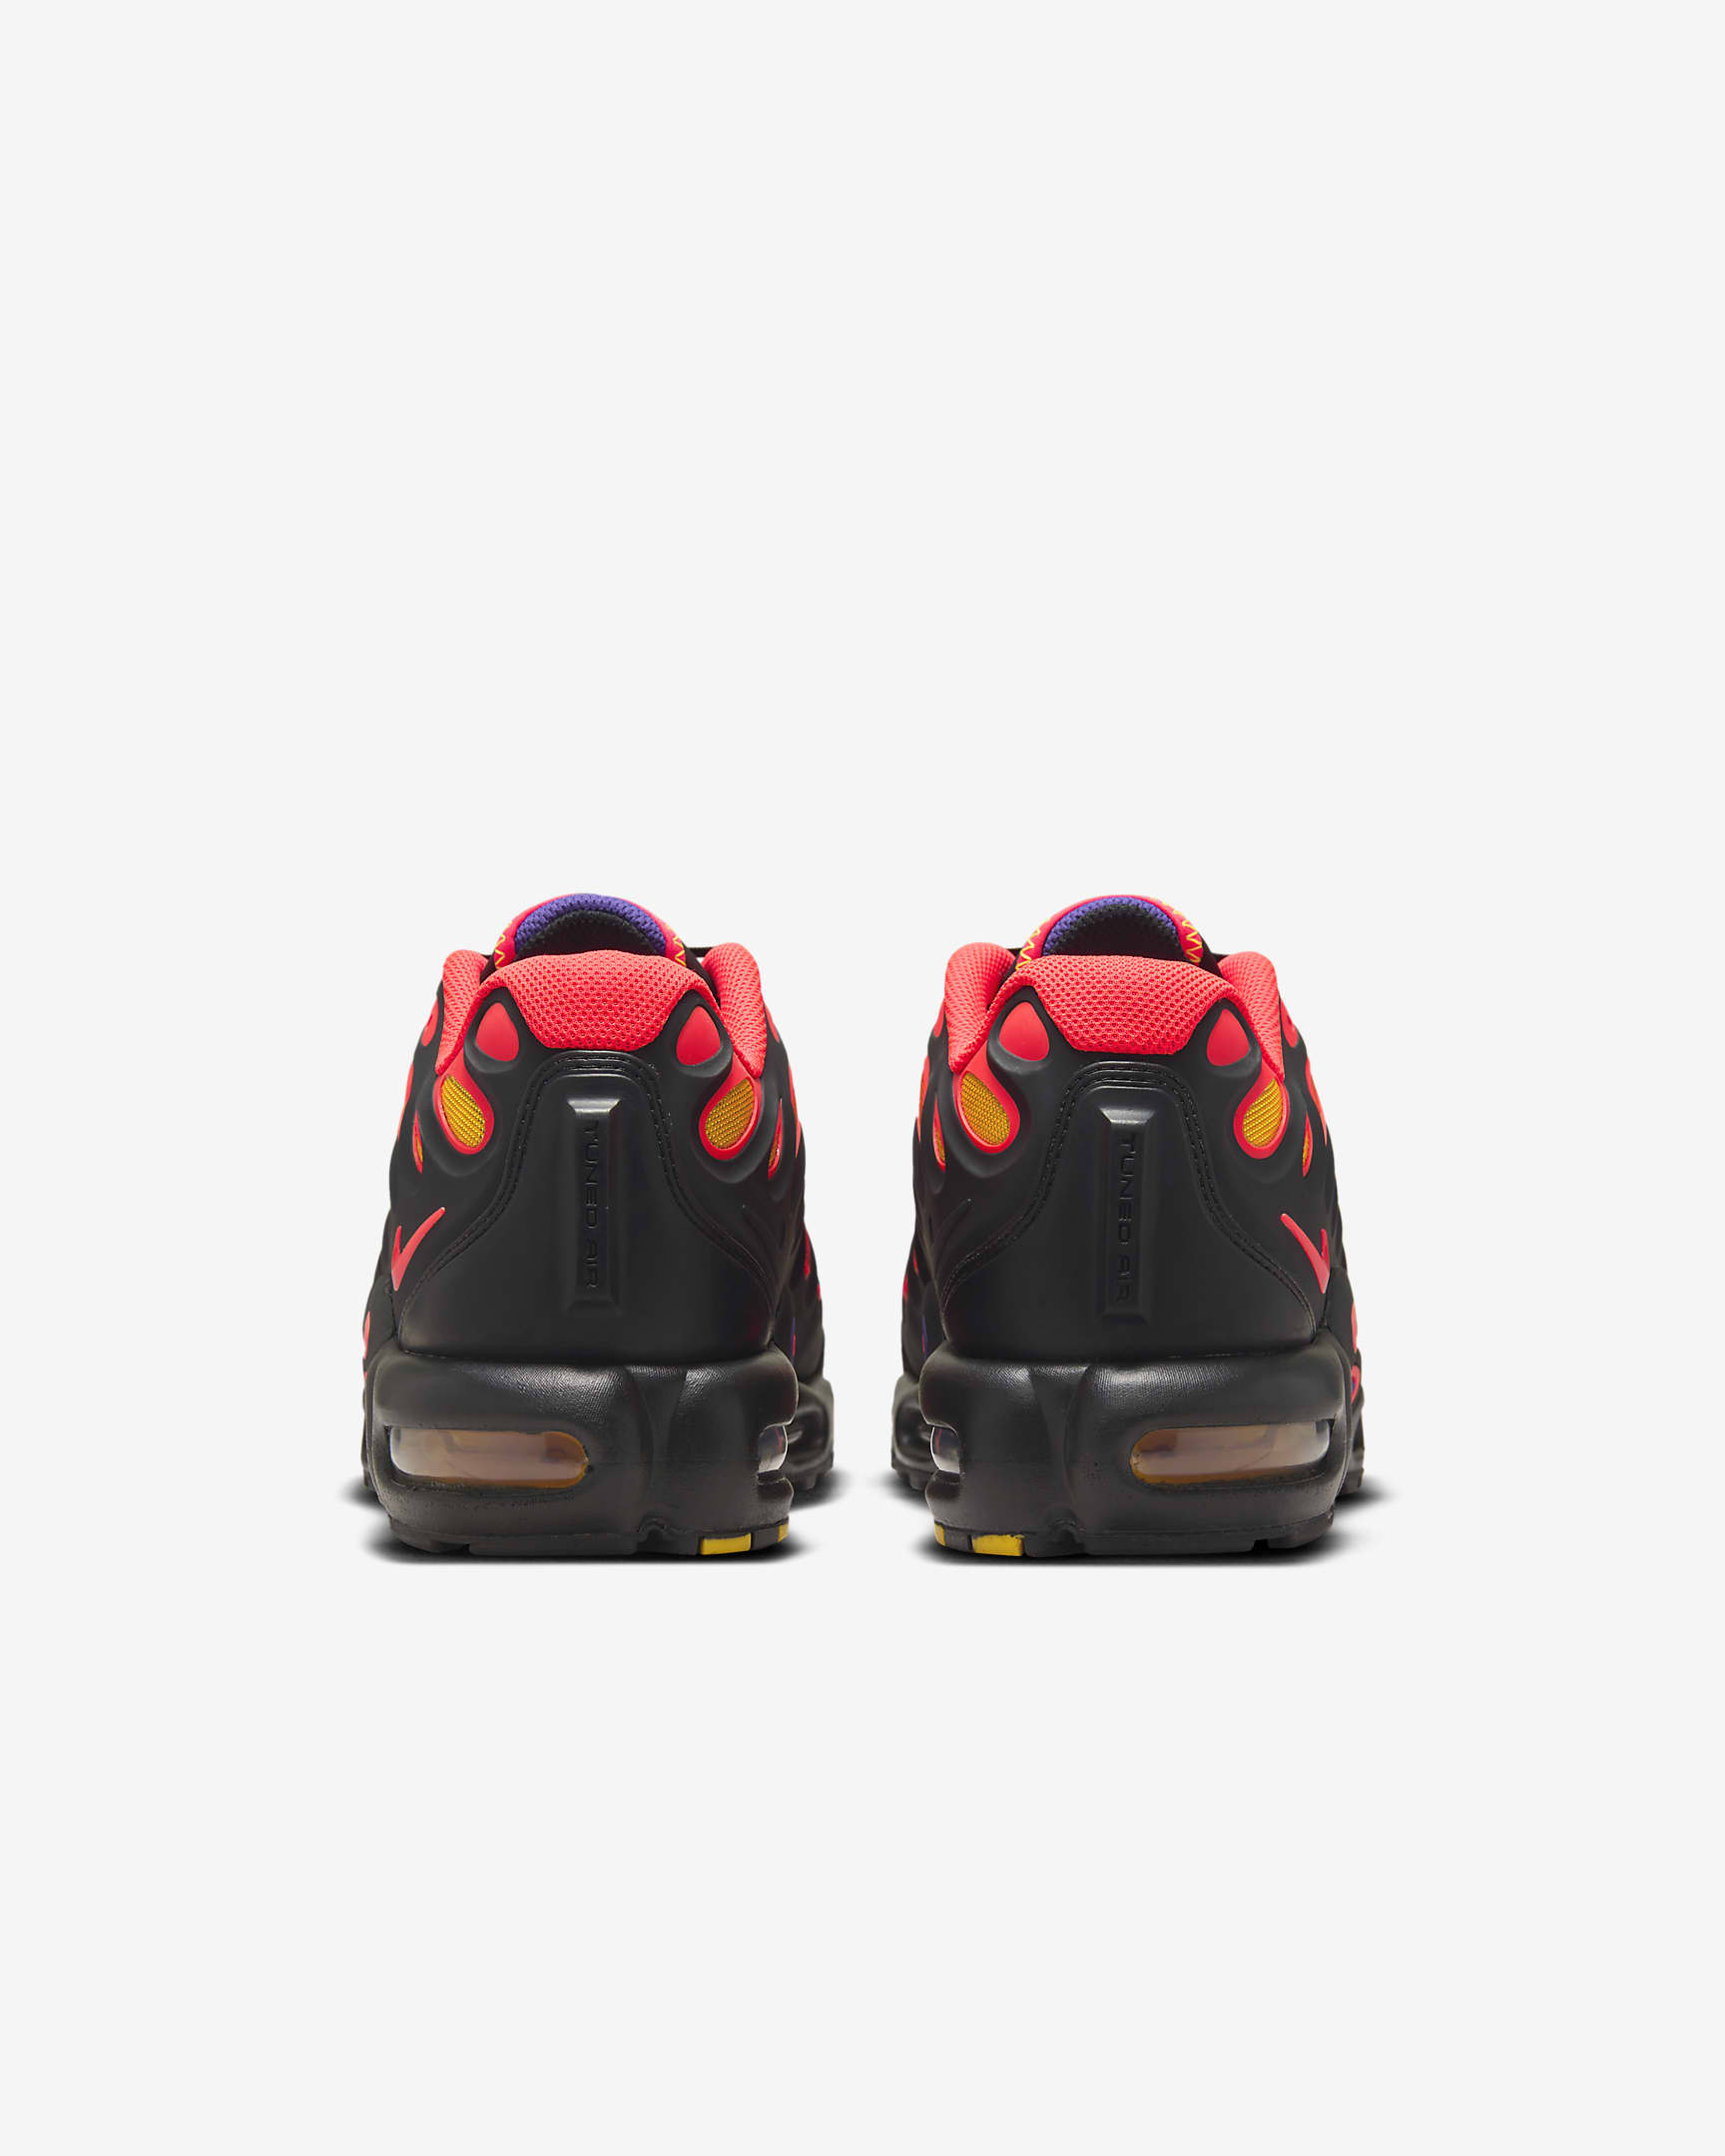 Chaussure Nike Air Max Plus Drift pour homme - Noir/Field Purple/Laser Orange/Bright Crimson